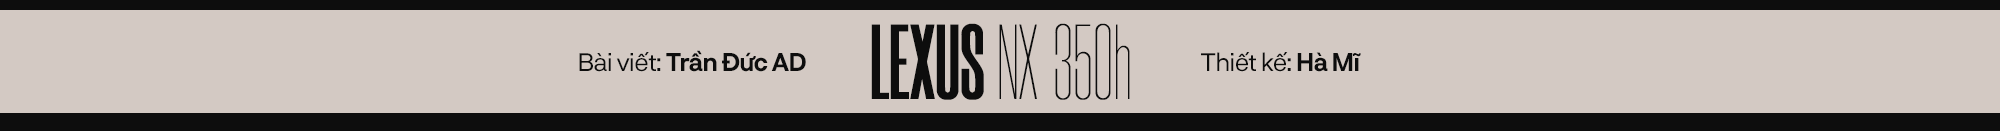 Lexus NX 350h - Chuẩn mực crossover hạng sang cho doanh nhân thế hệ mới - Ảnh 10.